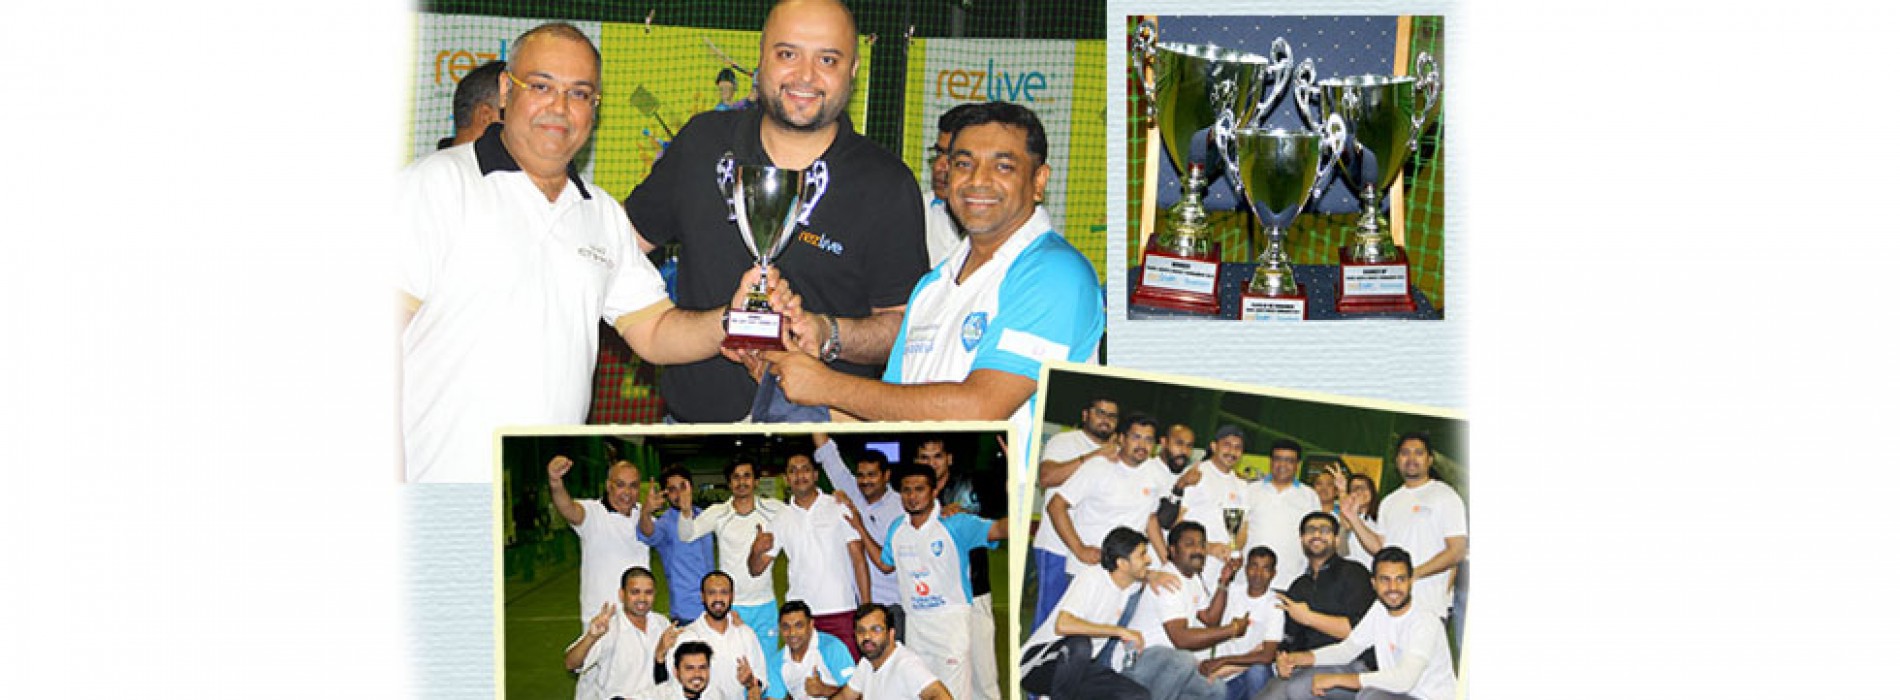 Omeir Travel wins RezLive.com-Travelwebme 2016 Cricket Tournament